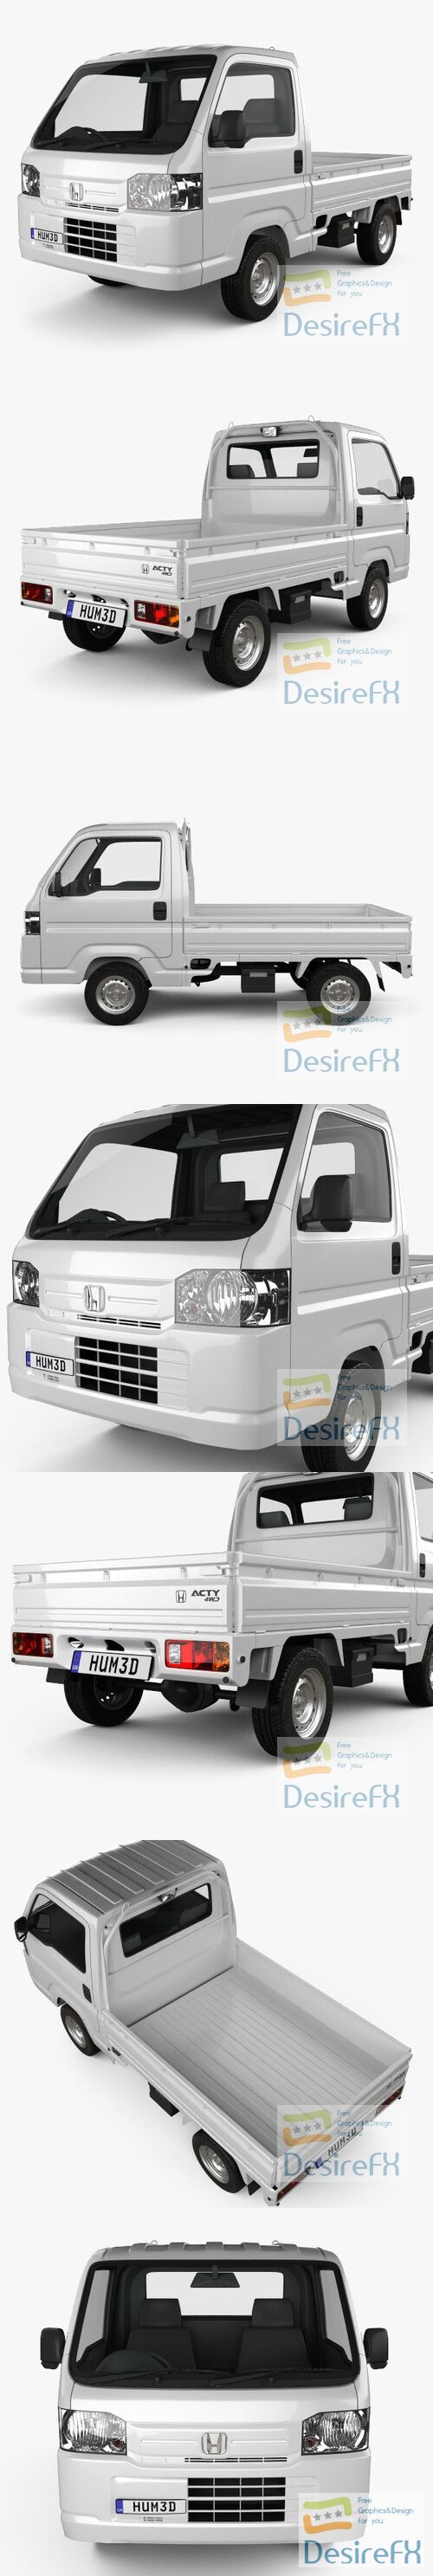 Honda Acty Truck 2012 3D Model